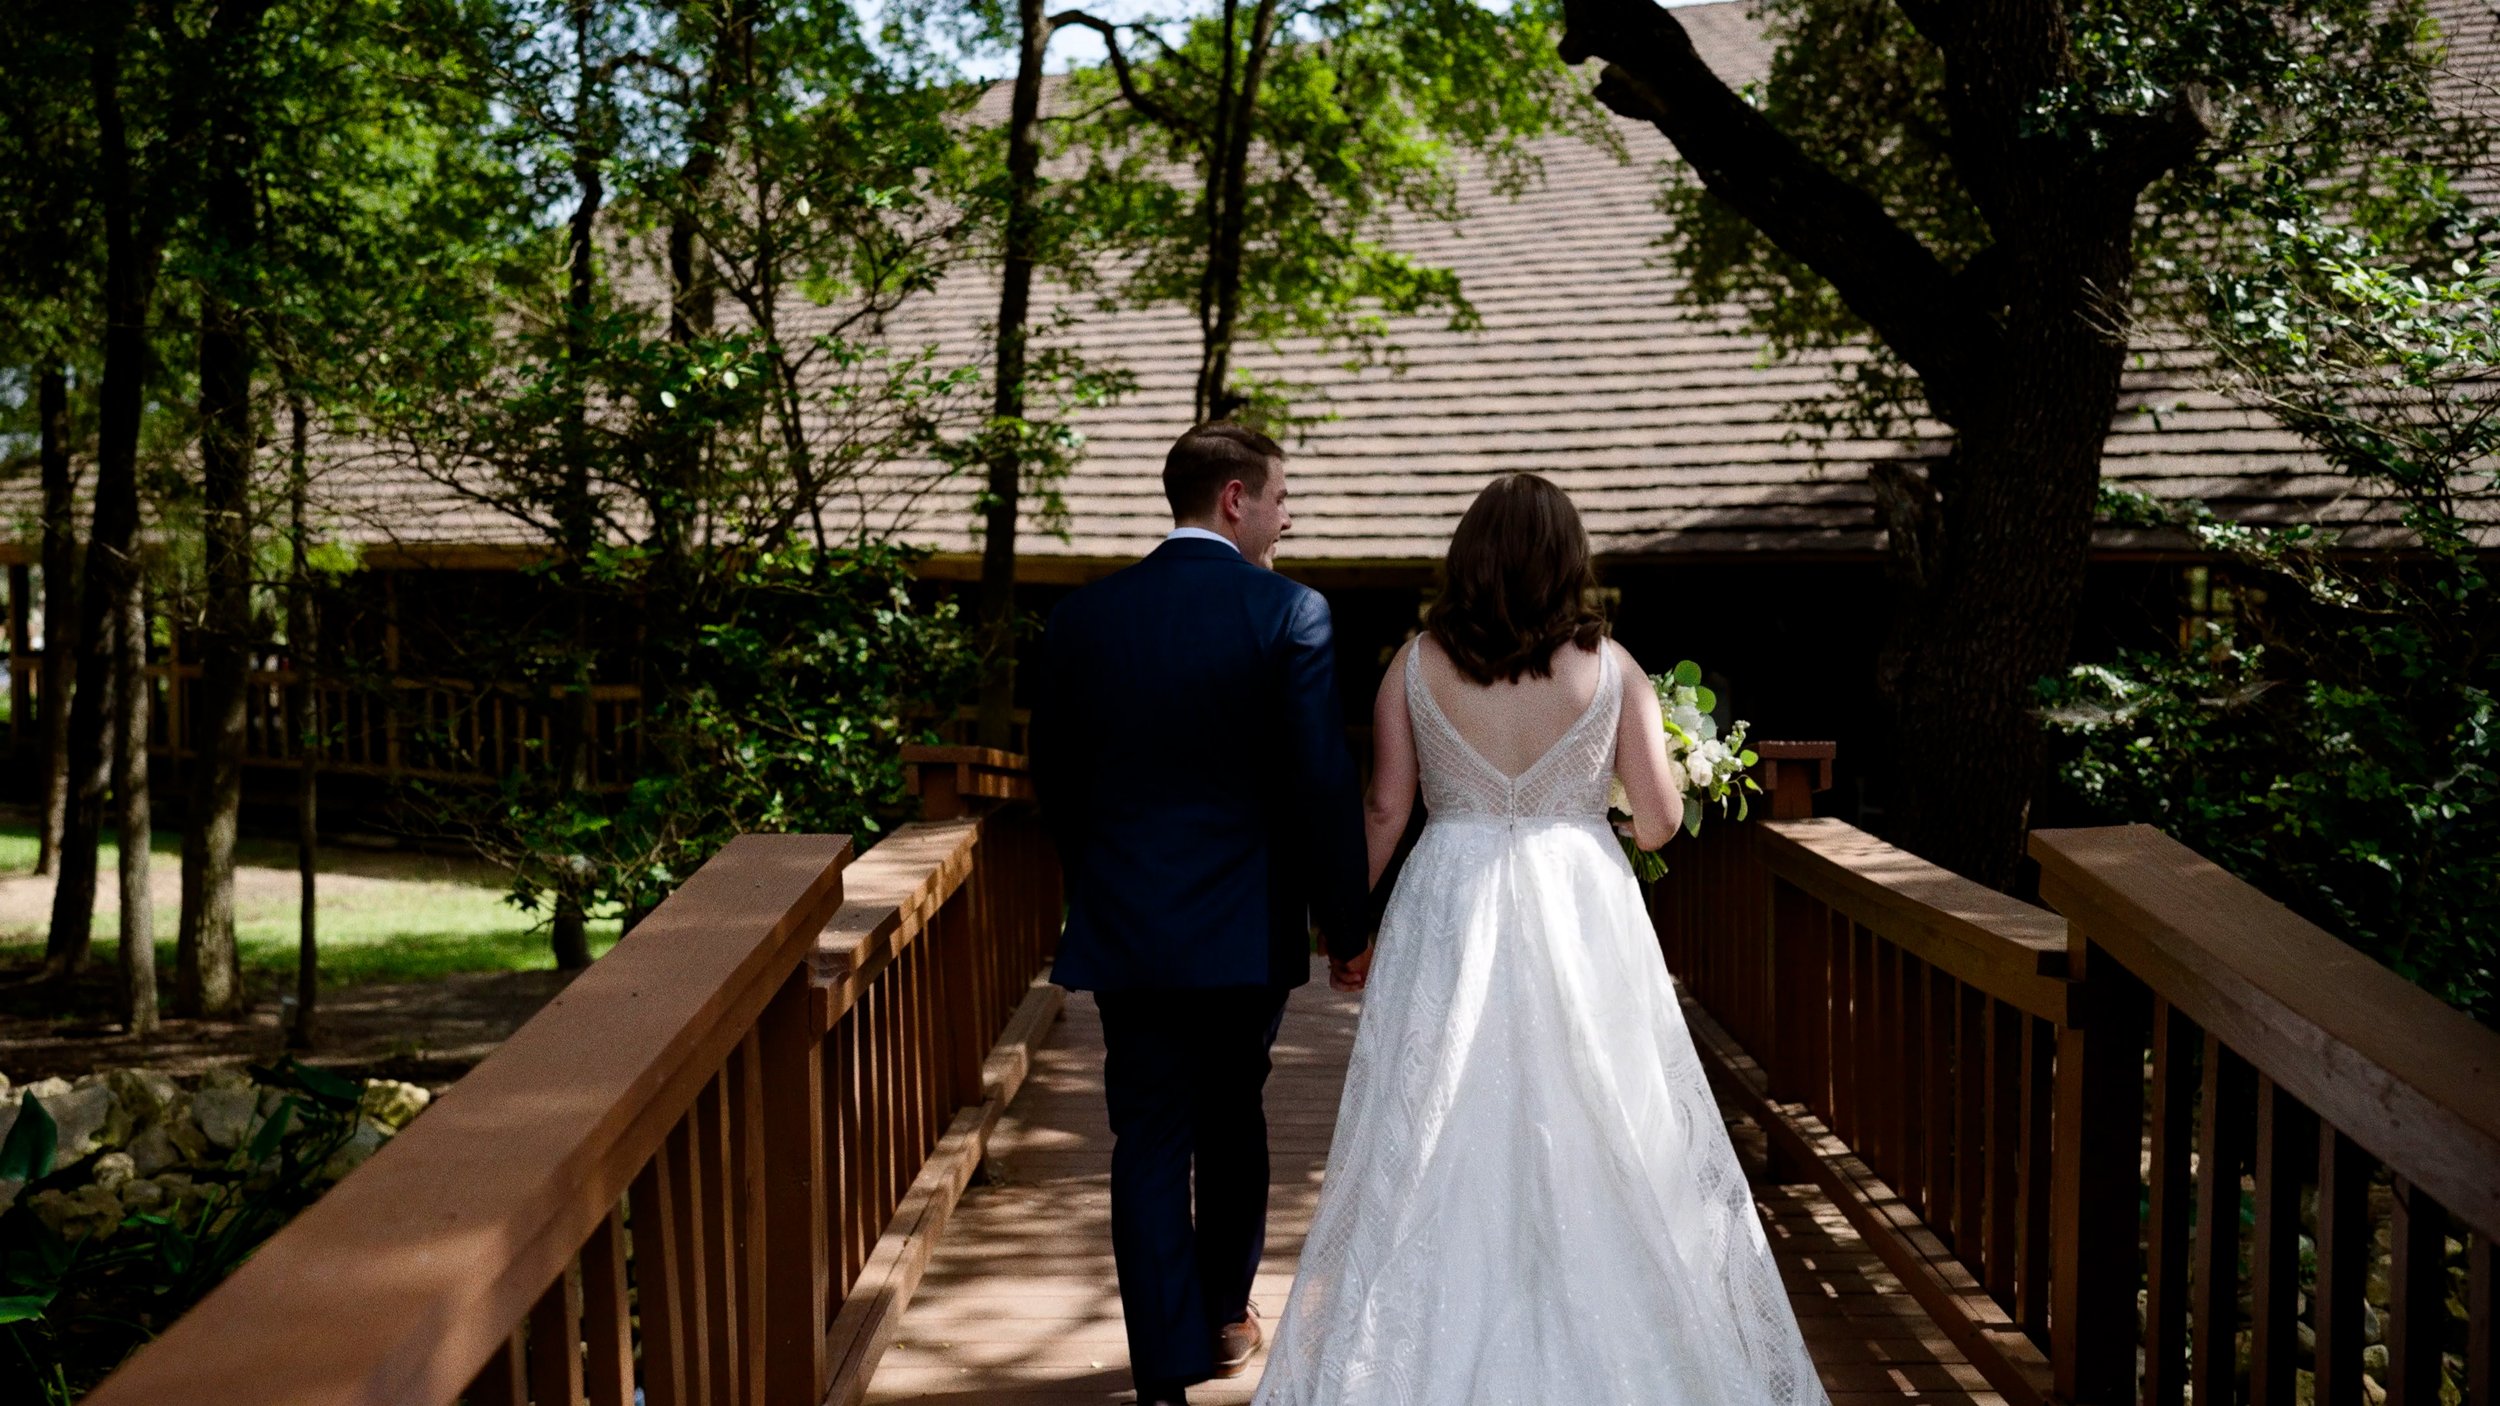 bride and groom walk across bridge after wedding ceremony.jpg